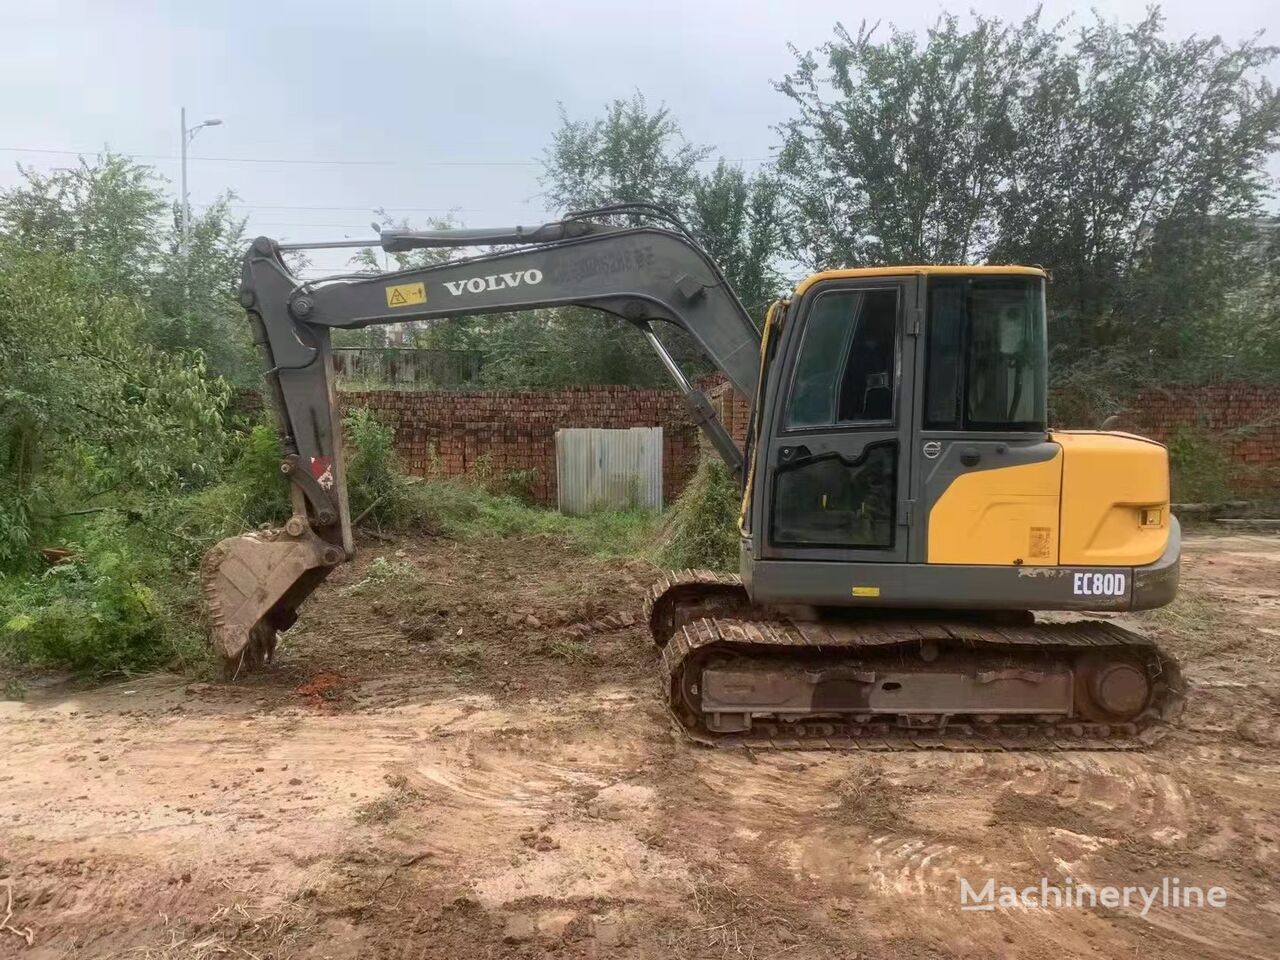 Volvo EC80D tracked excavator